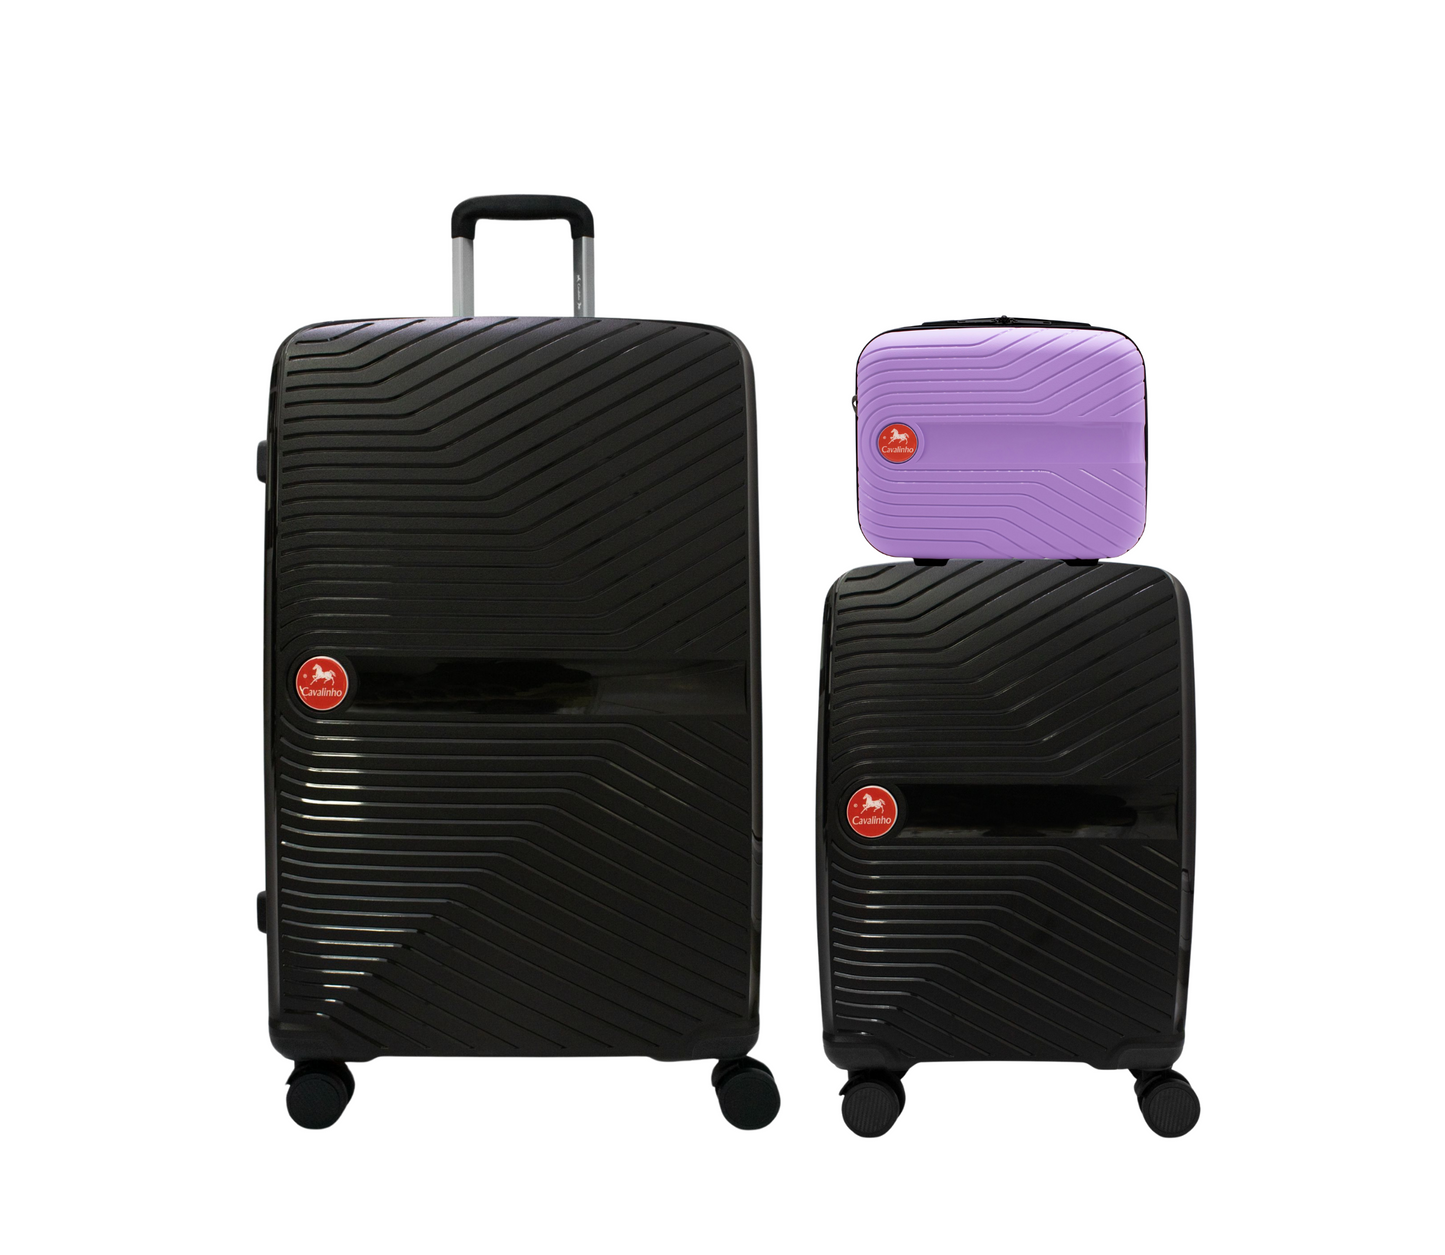 Cavalinho Canada & USA Colorful 3 Piece Luggage Set (15", 19" & 28") - Lilac Black Black - 68020004.390101.S151928._1